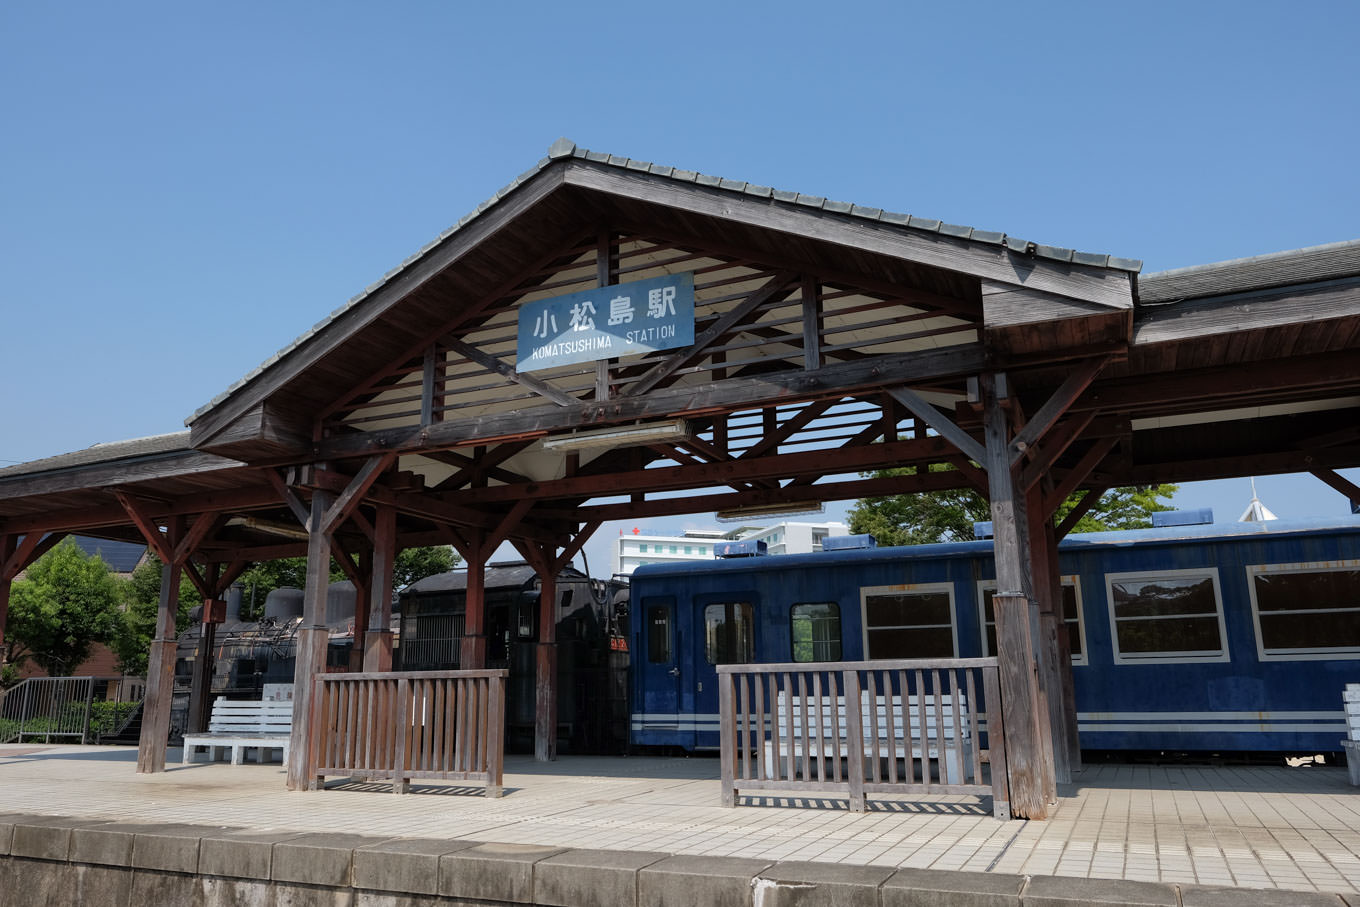 小松島駅跡に展示される蒸気機関車と小松島駅を模したホーム。